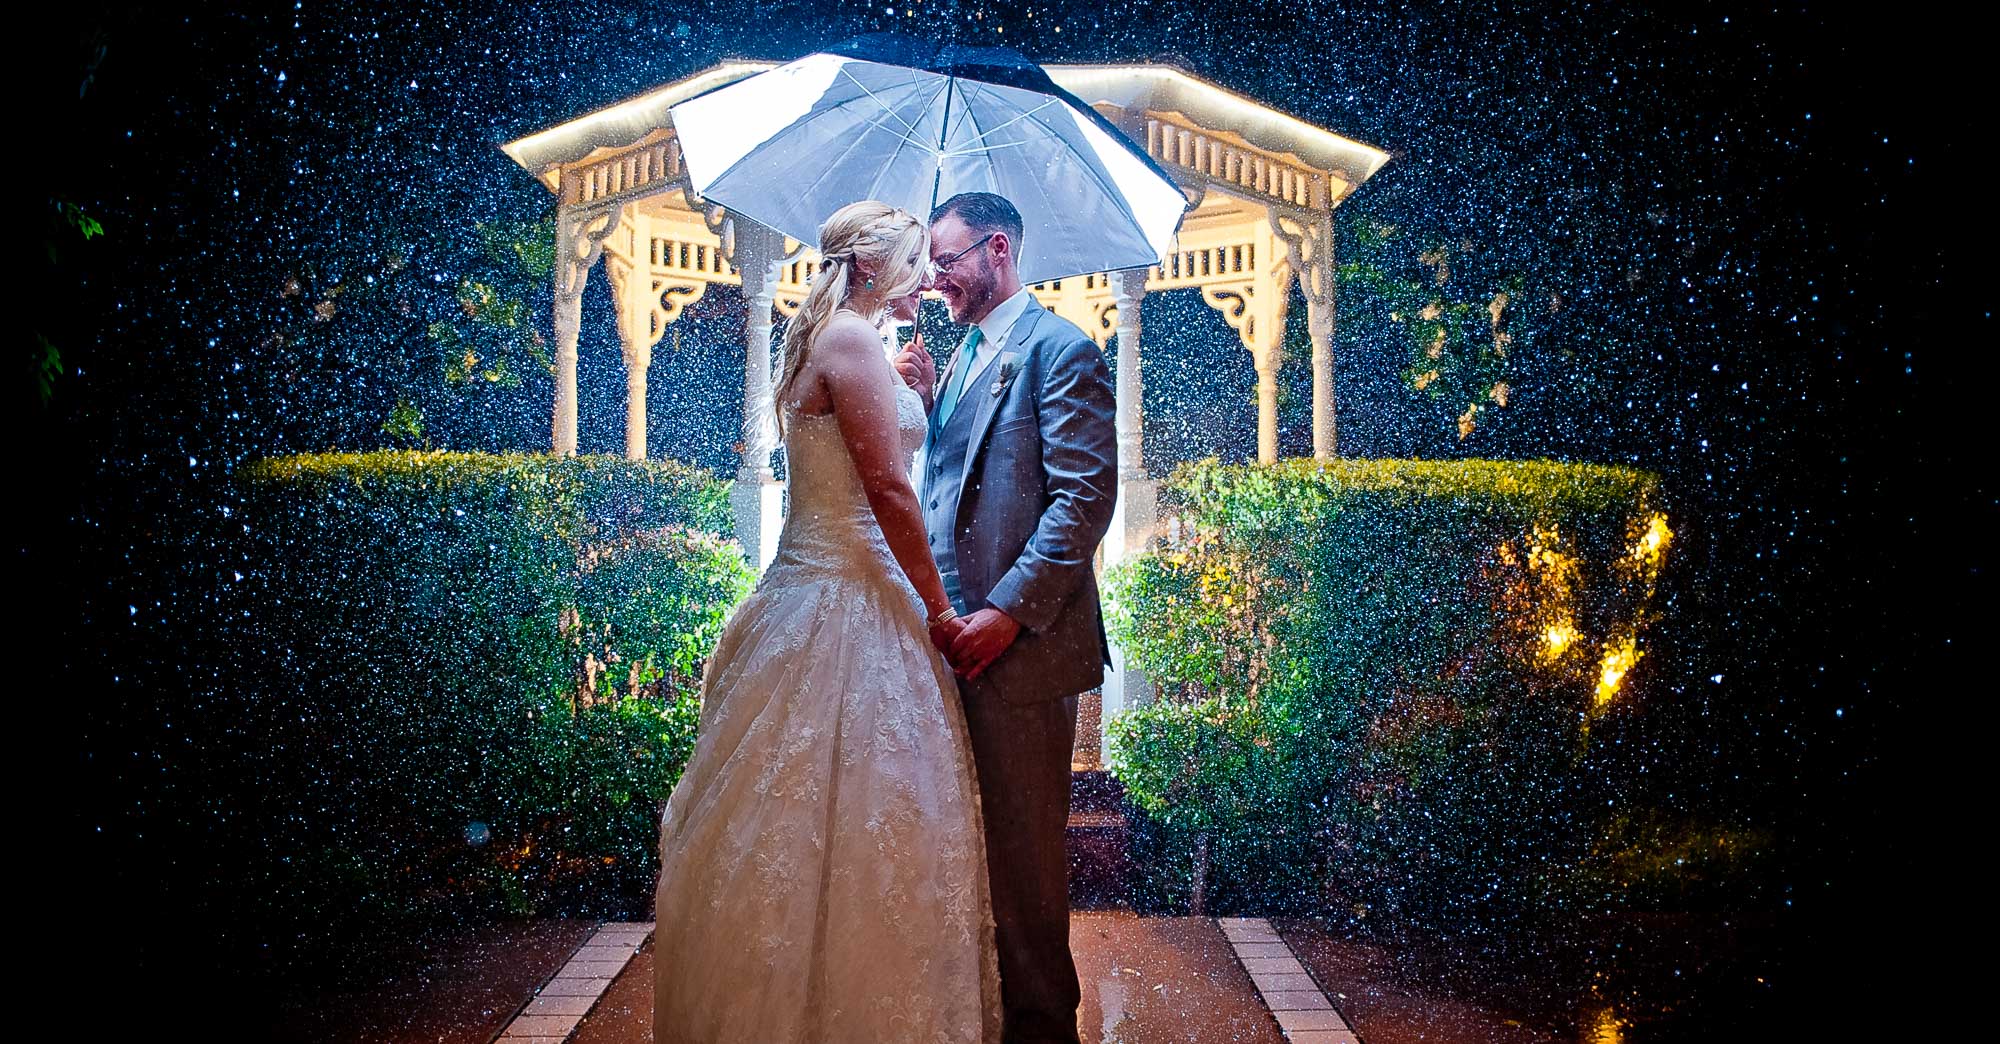 Kristen & Arthur’s Edwards Mansion Wedding featured slider image